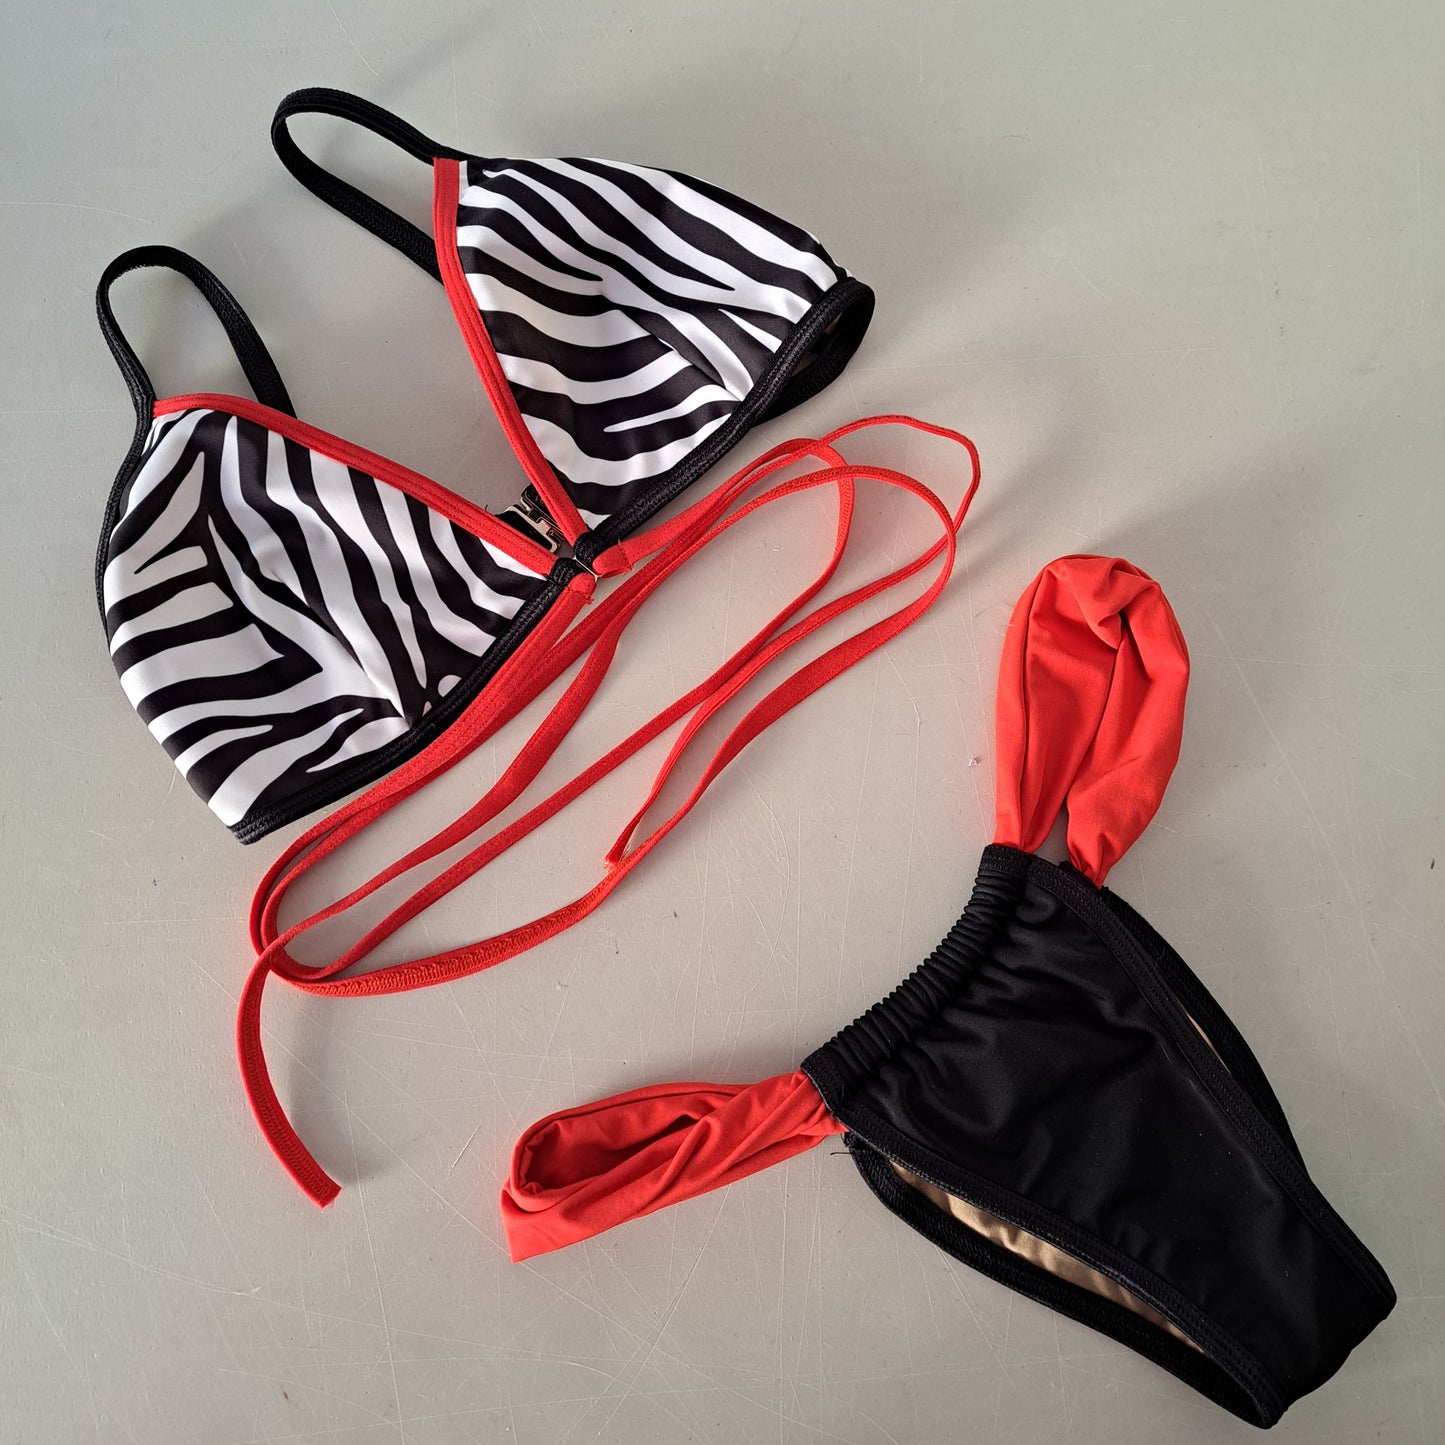 Completo bikini liv slip coco zebra rosso - Flamingo pole wear